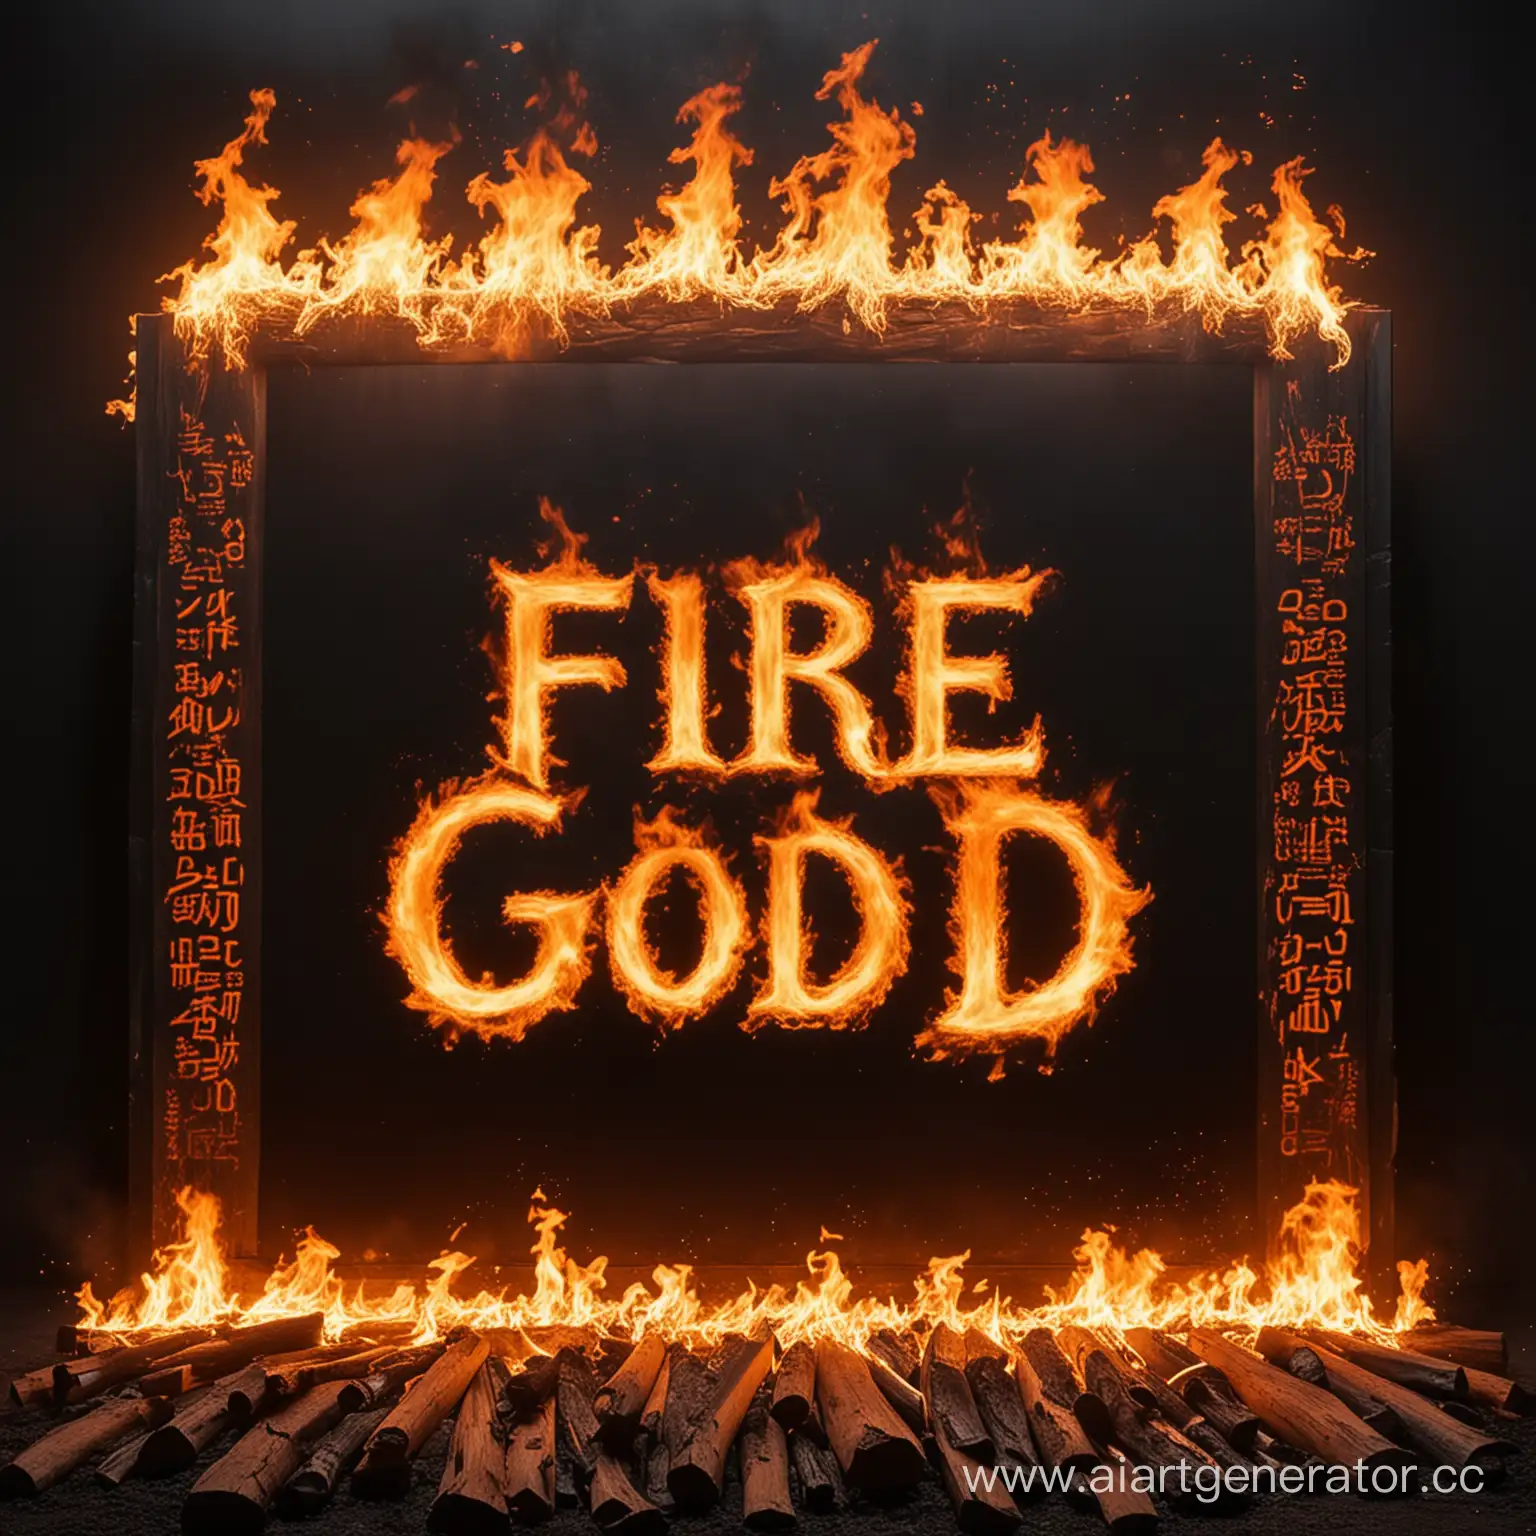 черный экран с огнем и по центру одна надпись "Fire God"
